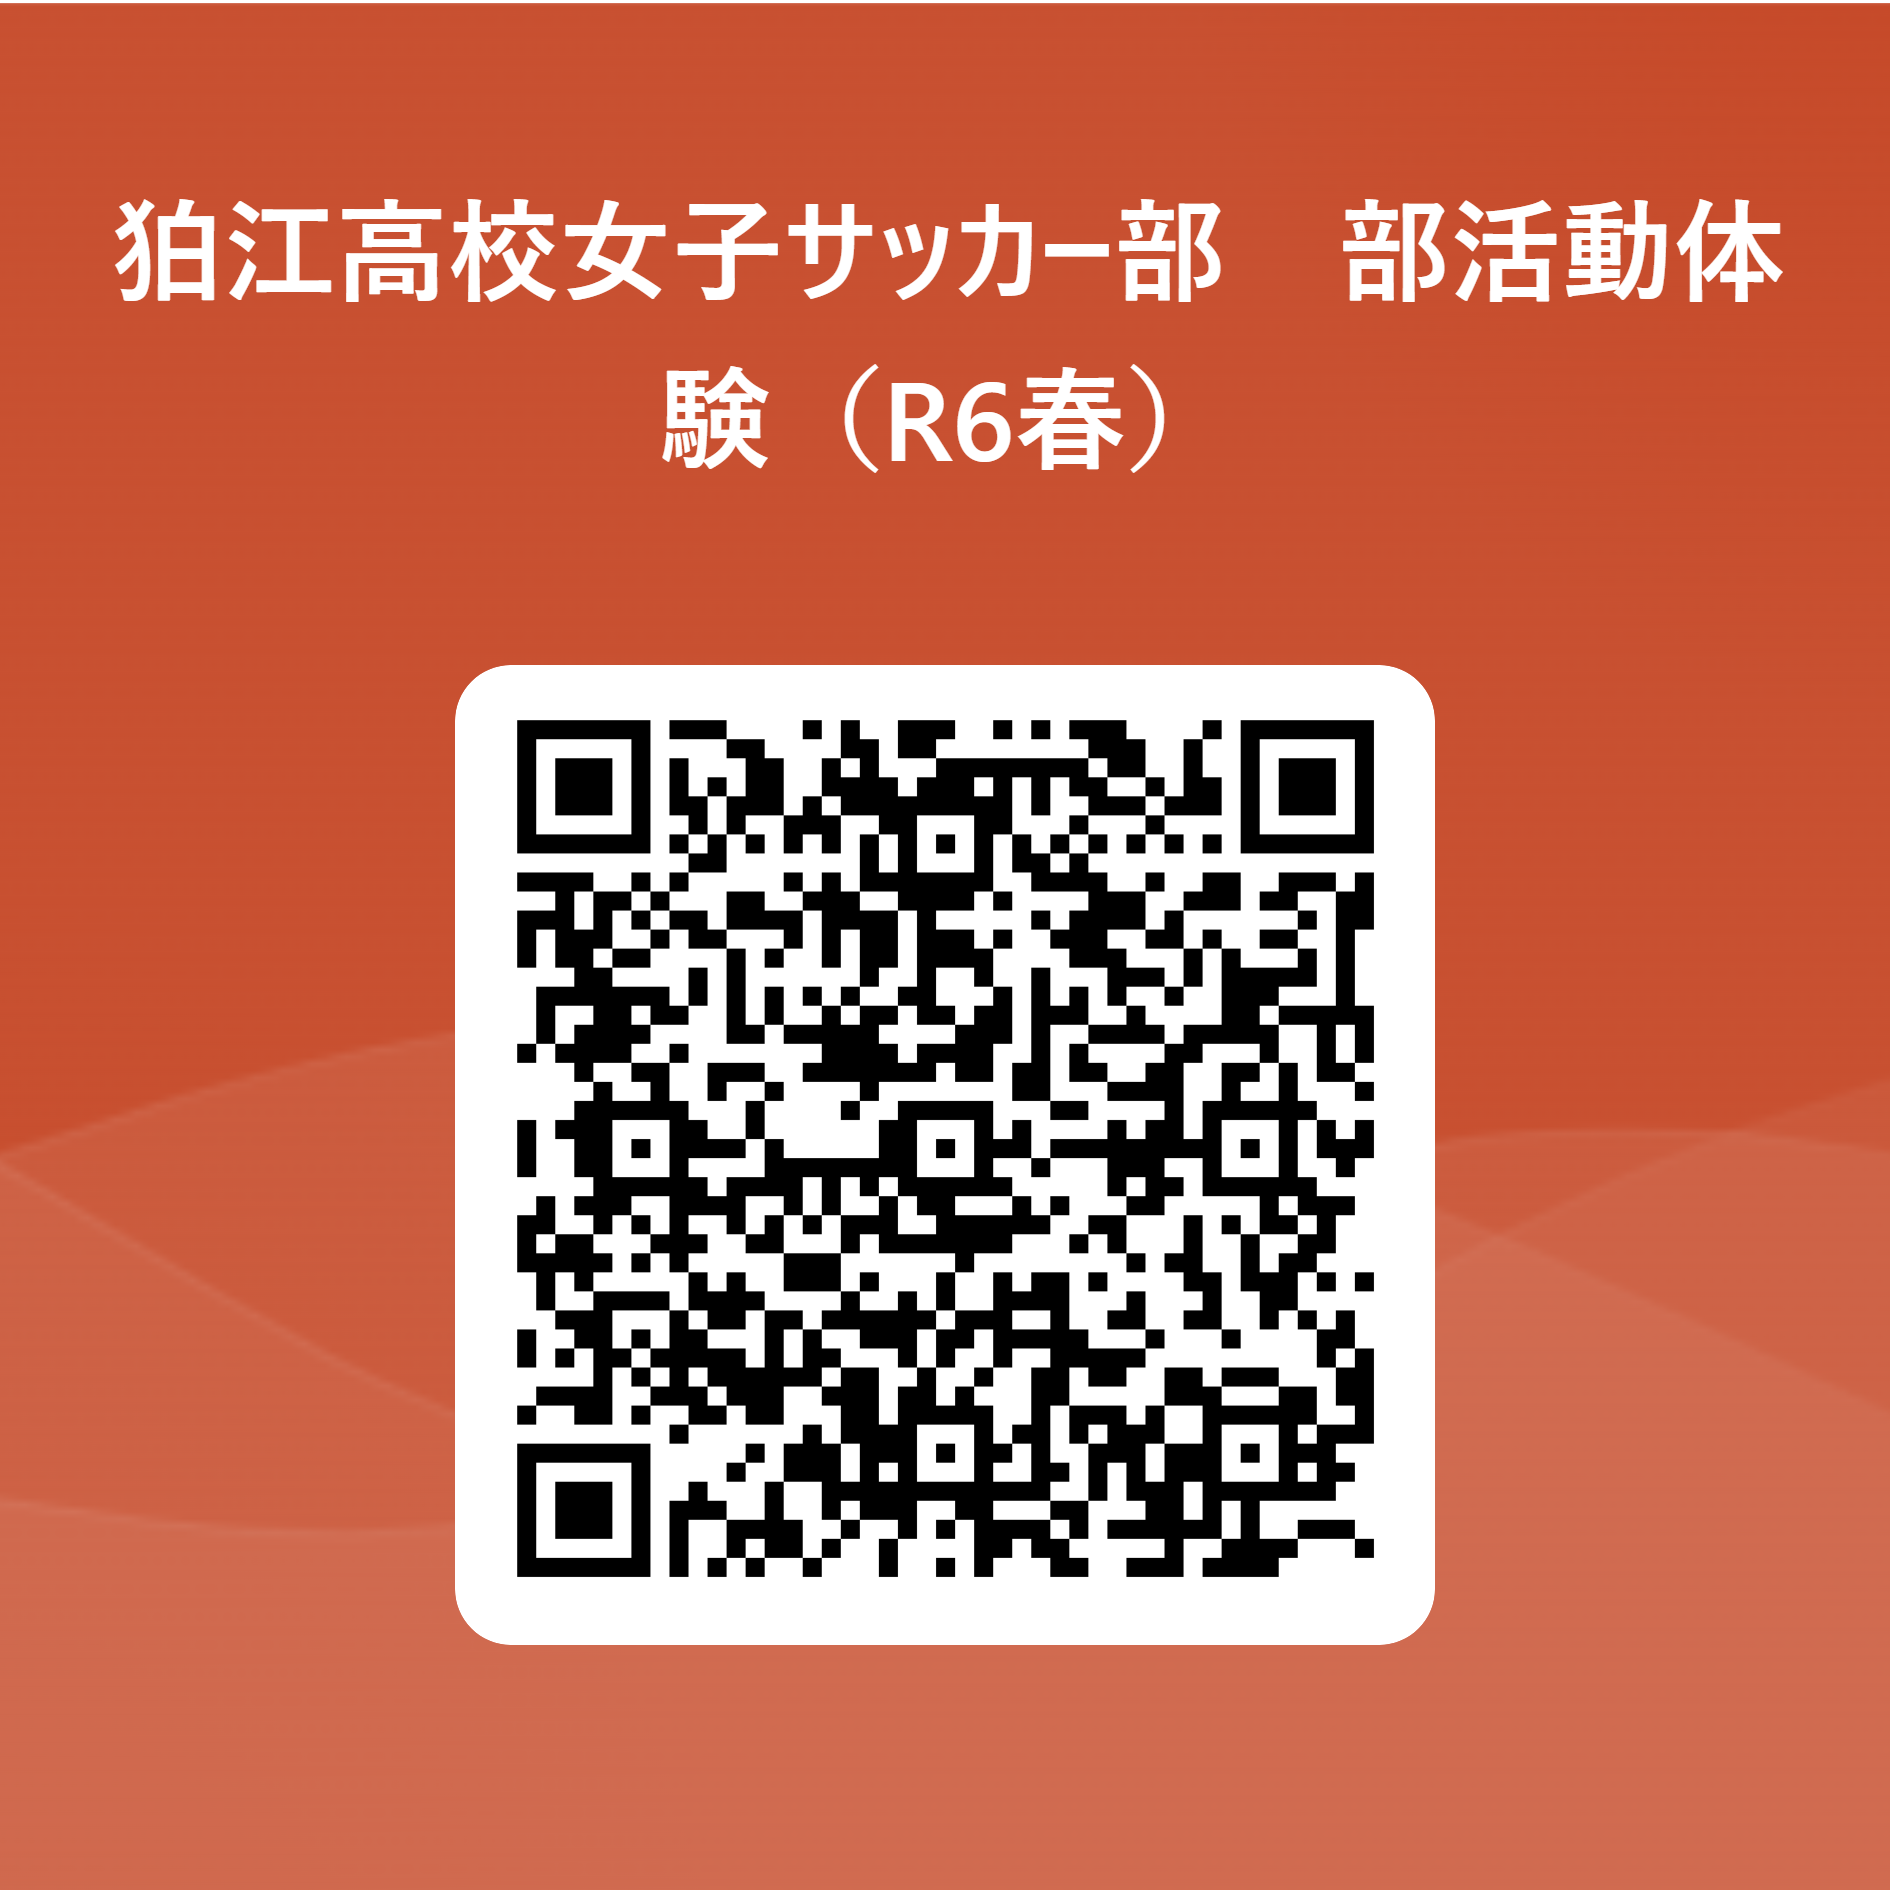 狛江高校女子サッカー部　部活動体験（R6春） 用 QR コード